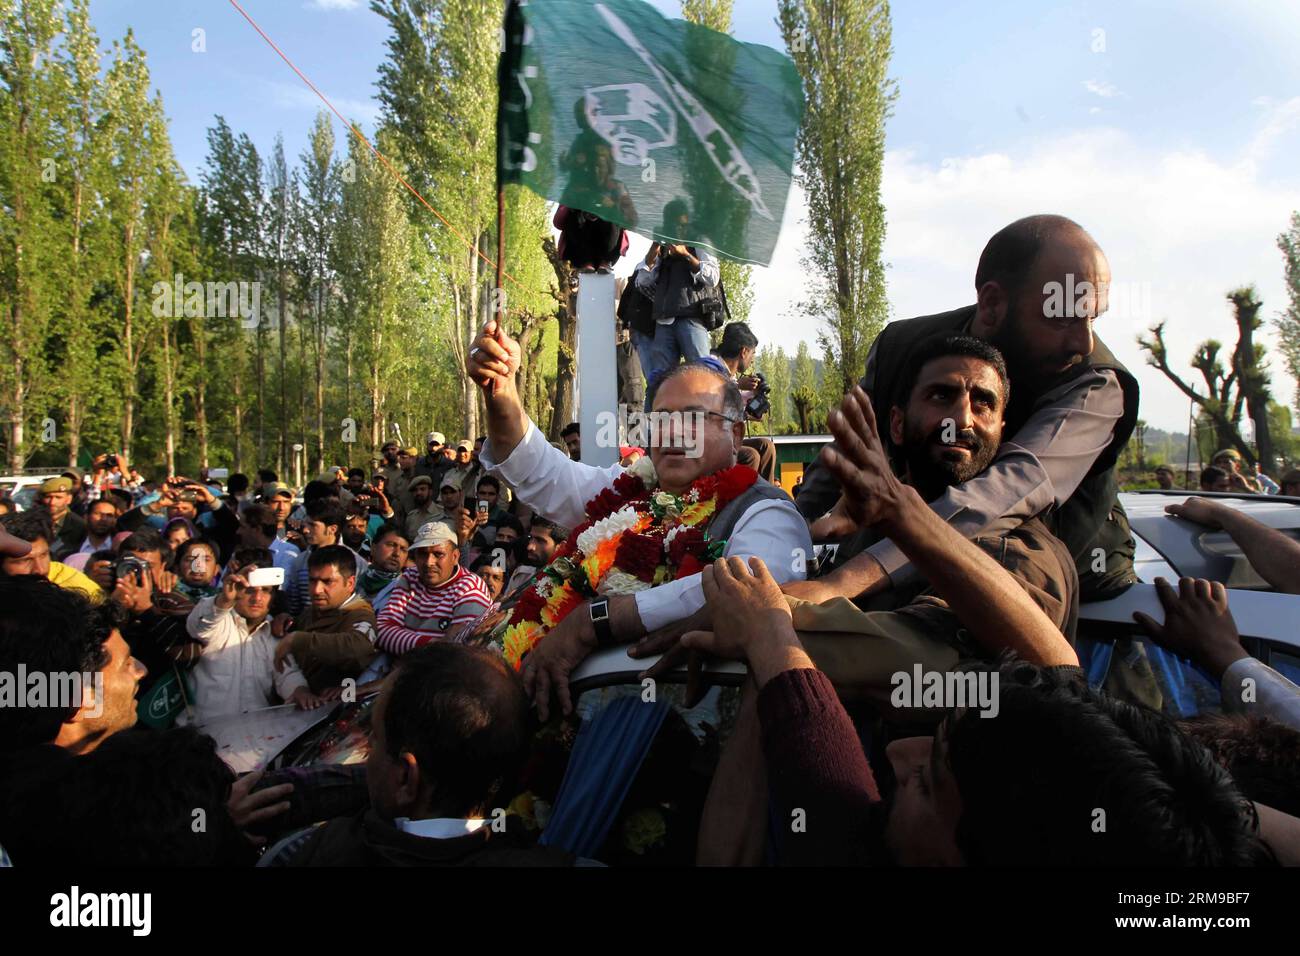 (140516) -- SRINAGAR, 16 mai 2014 (Xinhua) -- Tariq Hamid Kara, chef du principal parti d opposition du Cachemire contrôlé par l Inde, le Parti démocratique du peuple (PDP), tient un drapeau du parti alors que les gens le saluent après qu il a été déclaré vainqueur pour un siège parlementaire, à Srinagar, la capitale estivale du Cachemire contrôlé par l Inde, le 16 mai 2014. (Xinhua/Javed Dar) INDE-CACHEMIRE-SRINAGAR-ELECTIONS GÉNÉRALES PUBLICATIONxNOTxINxCHN Srinagar Mai 16 2014 XINHUA Tariq Hamid Karabakh Chef du Cachemire contrôlé par l'Inde S principal parti d'opposition Parti démocratique populaire PDP tient un drapeau du parti alors que des célébrités le saluent Afte Banque D'Images